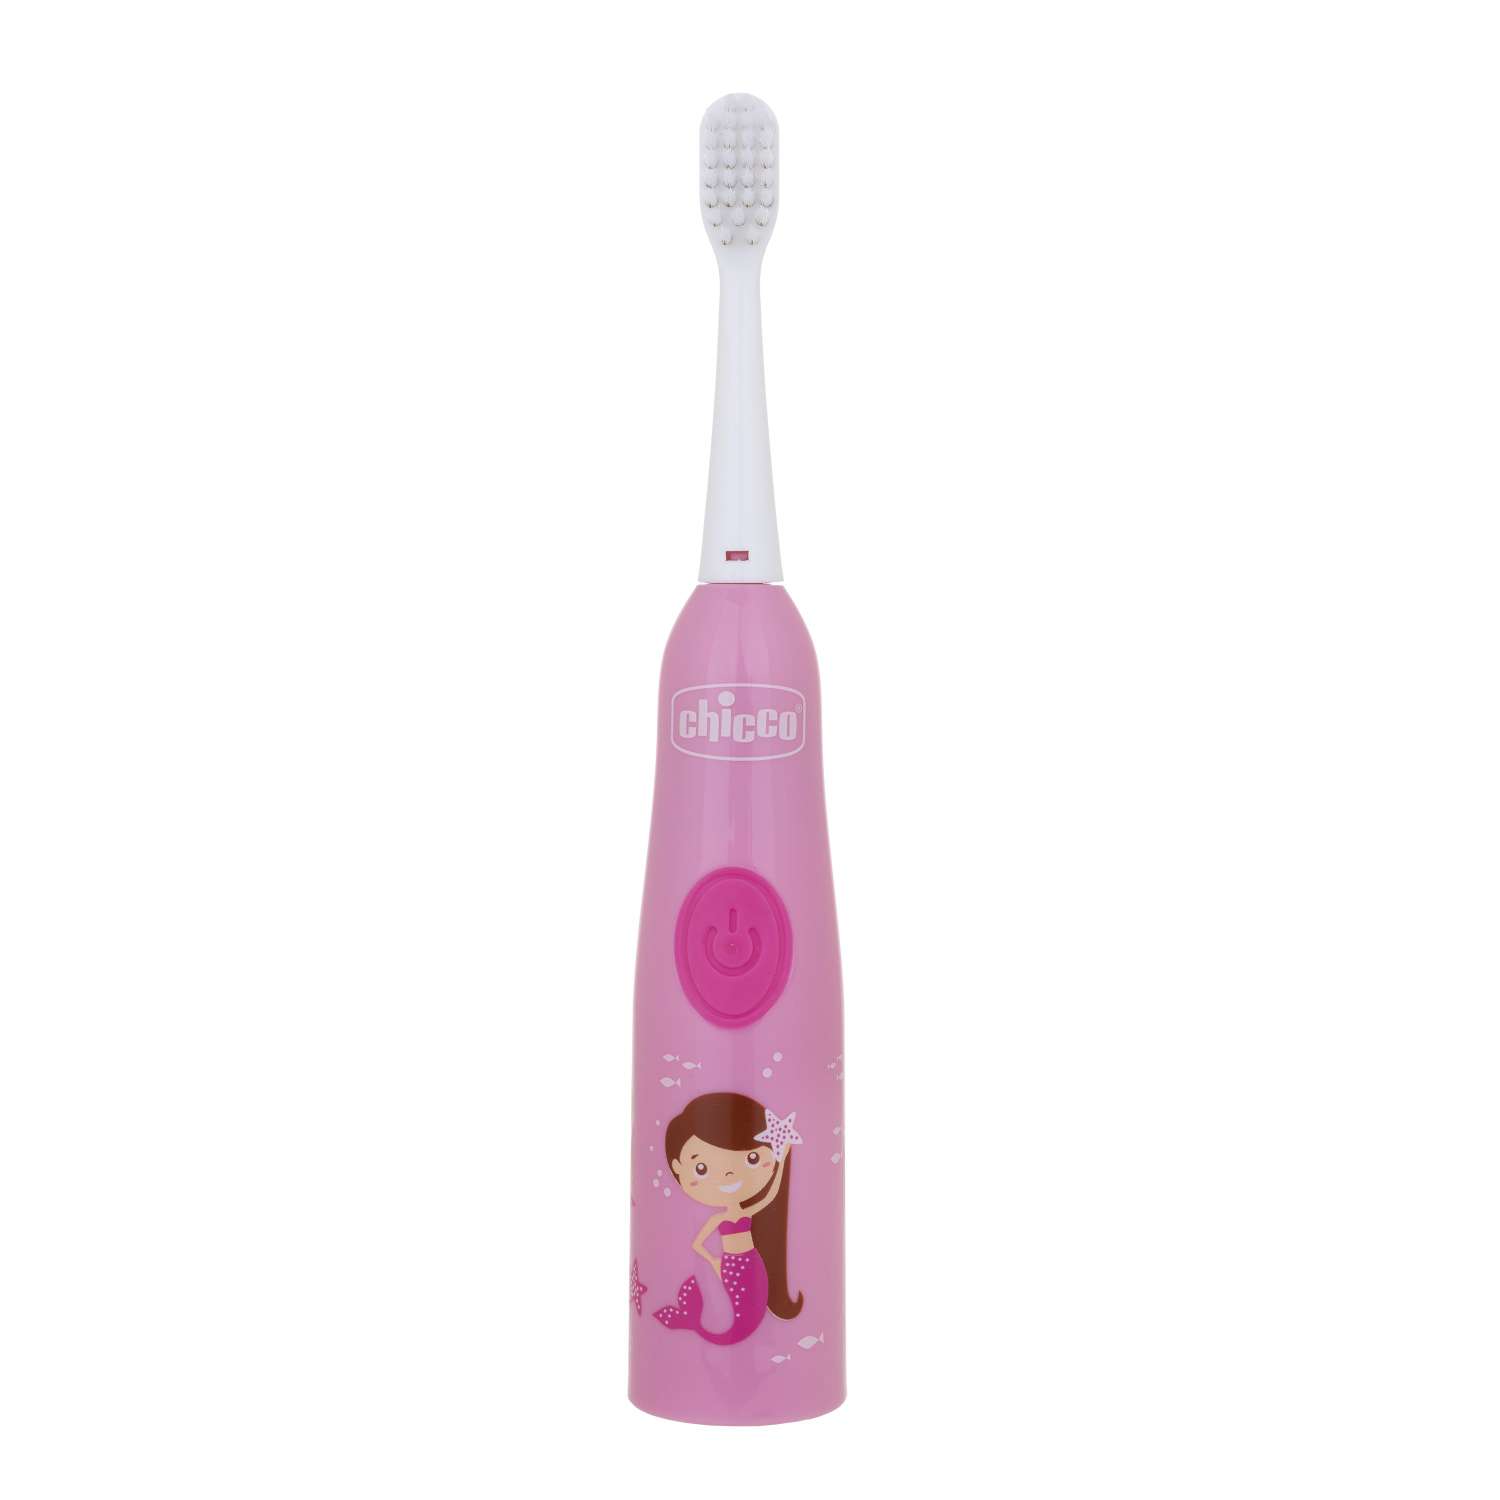 Электрическая зубная щетка Chicco для девочки мягкие щетинки для детей от 3 лет сменная насадка в комплекте - фото 2